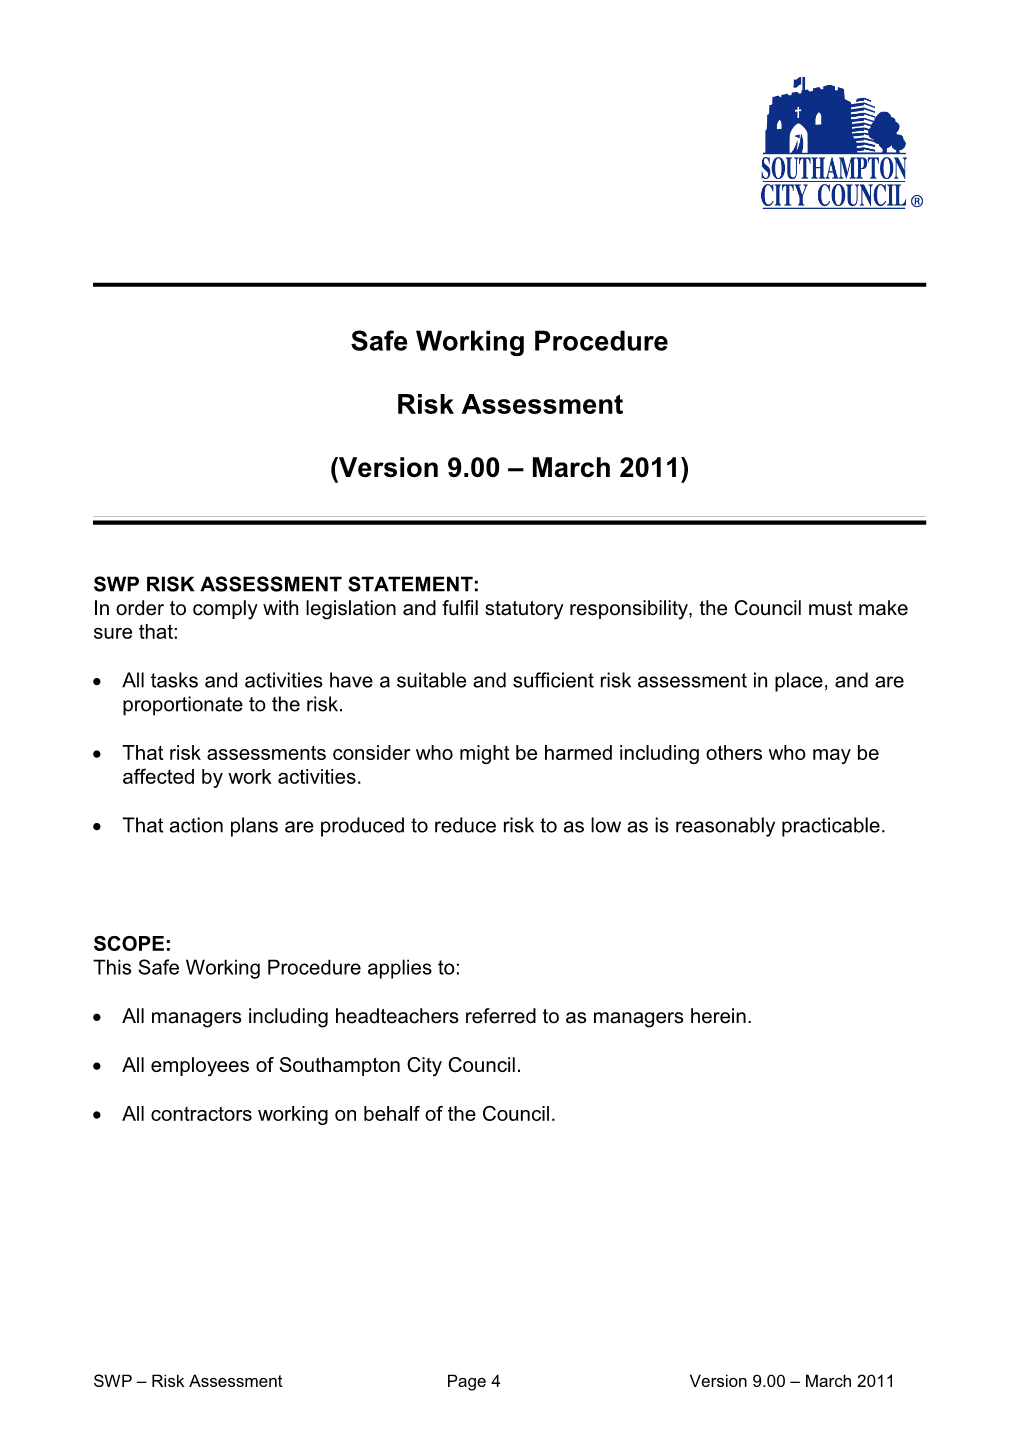 SWP - Risk Assessment